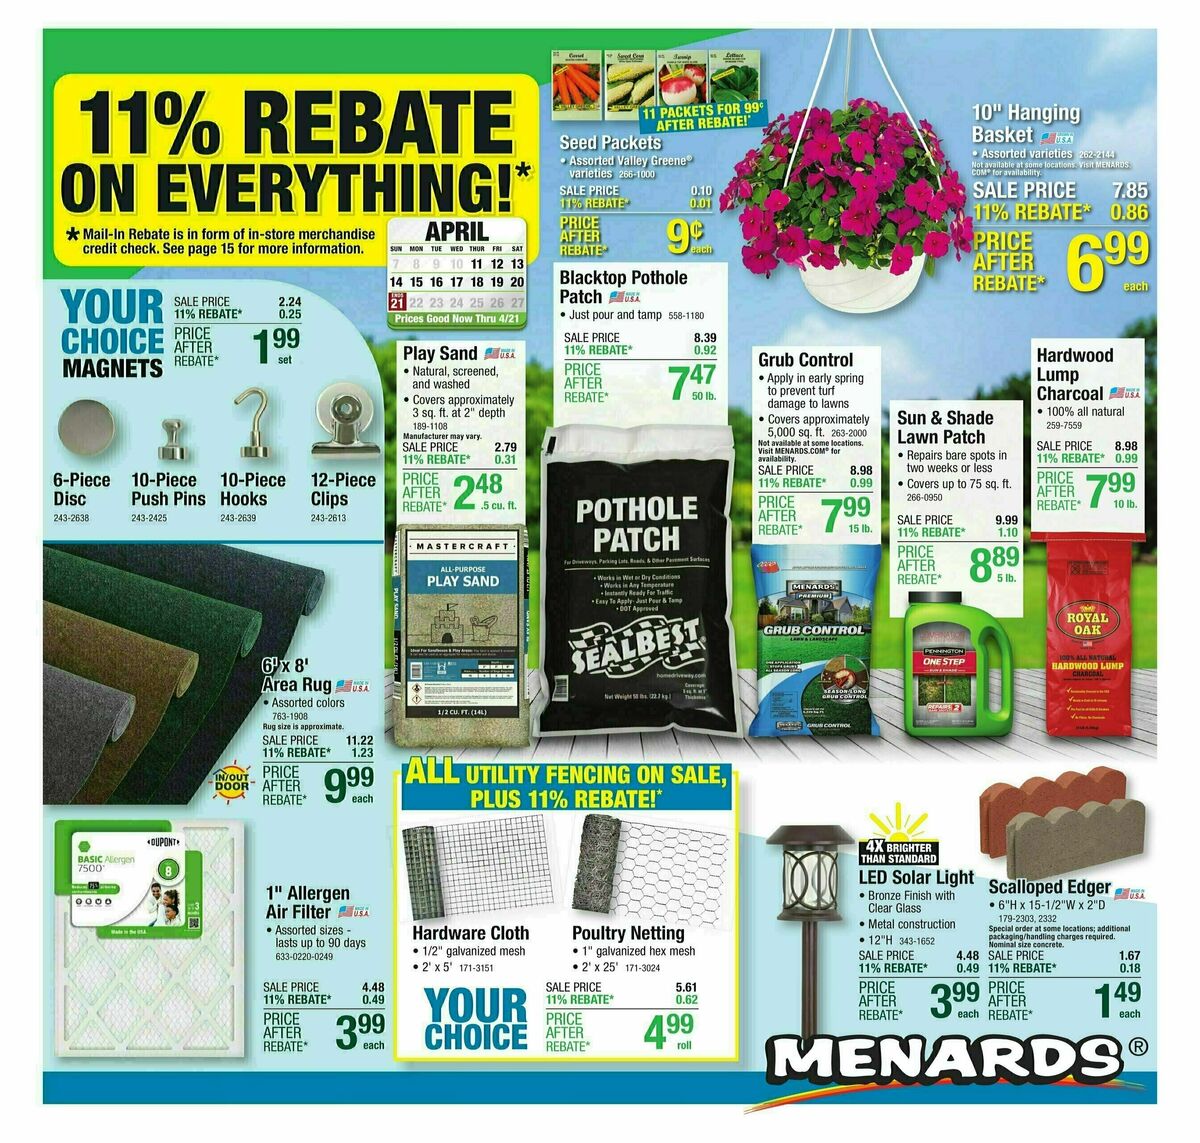 Menards 11% Rebate Sale Weekly Ad from April 10